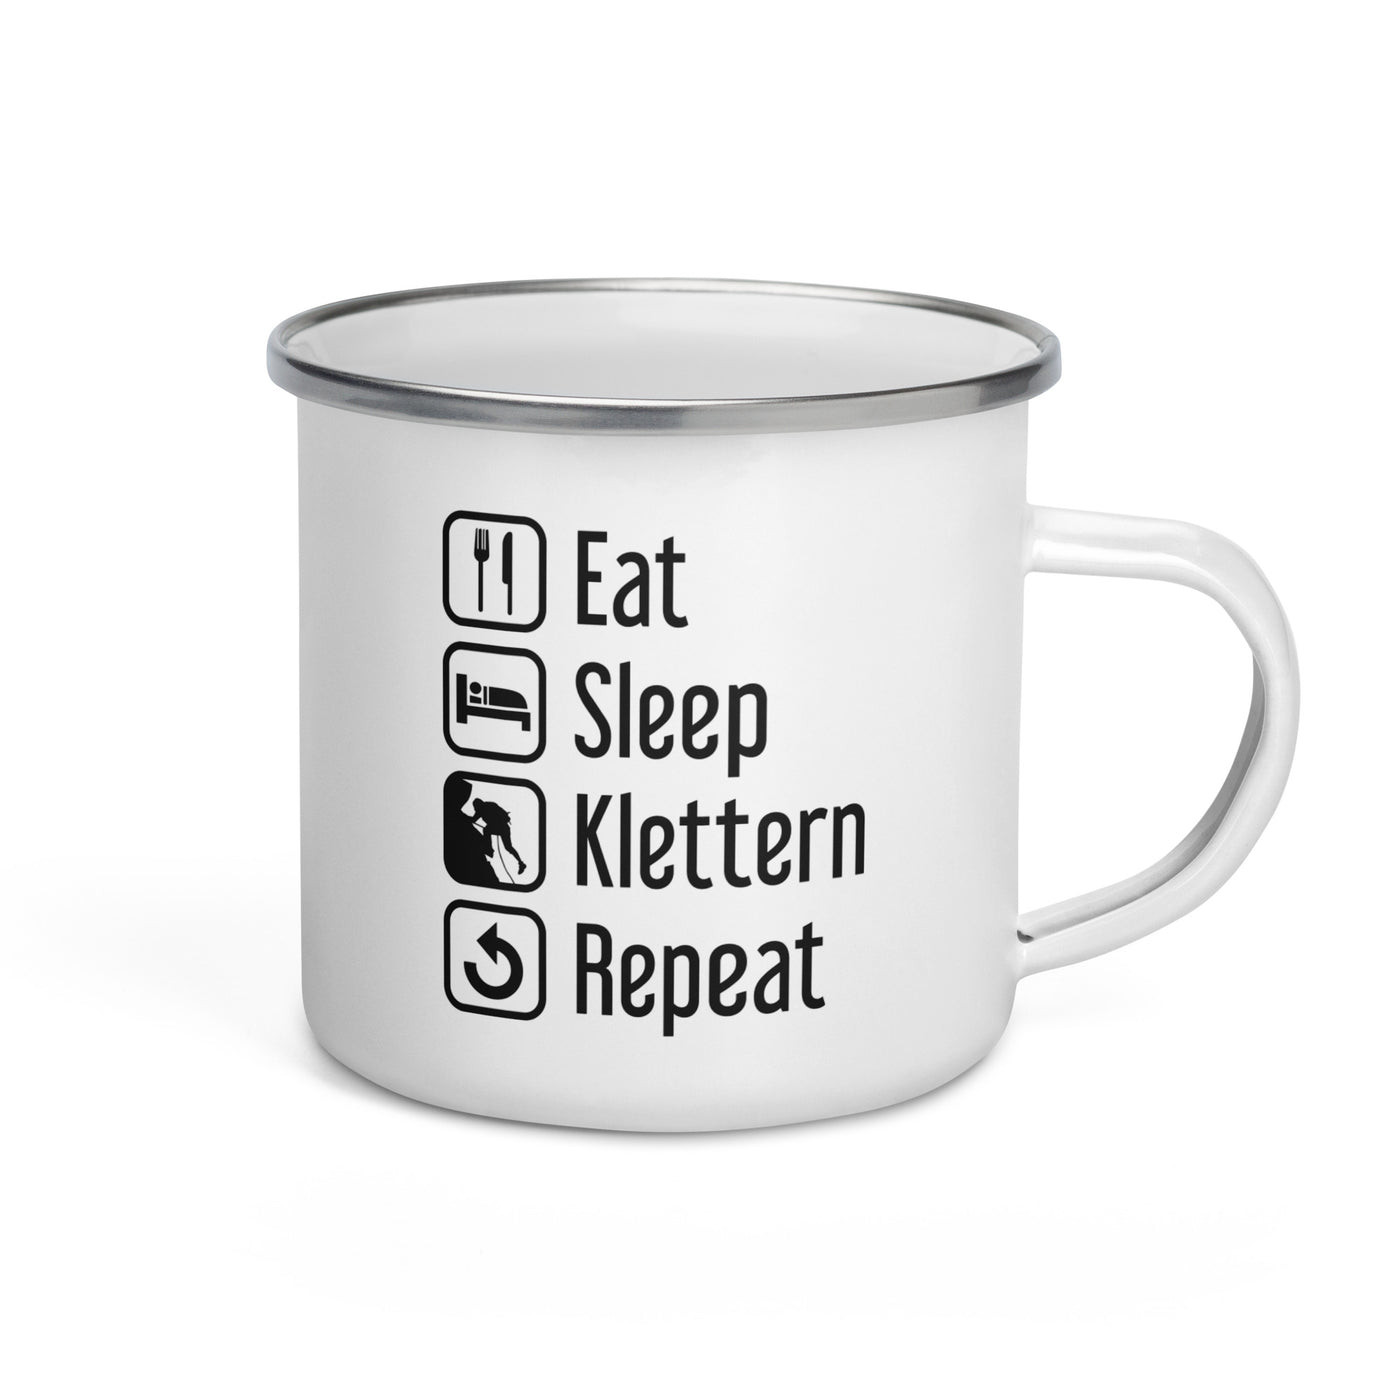 Eat Sleep Klettern Repeat - Emaille Tasse klettern Default Title